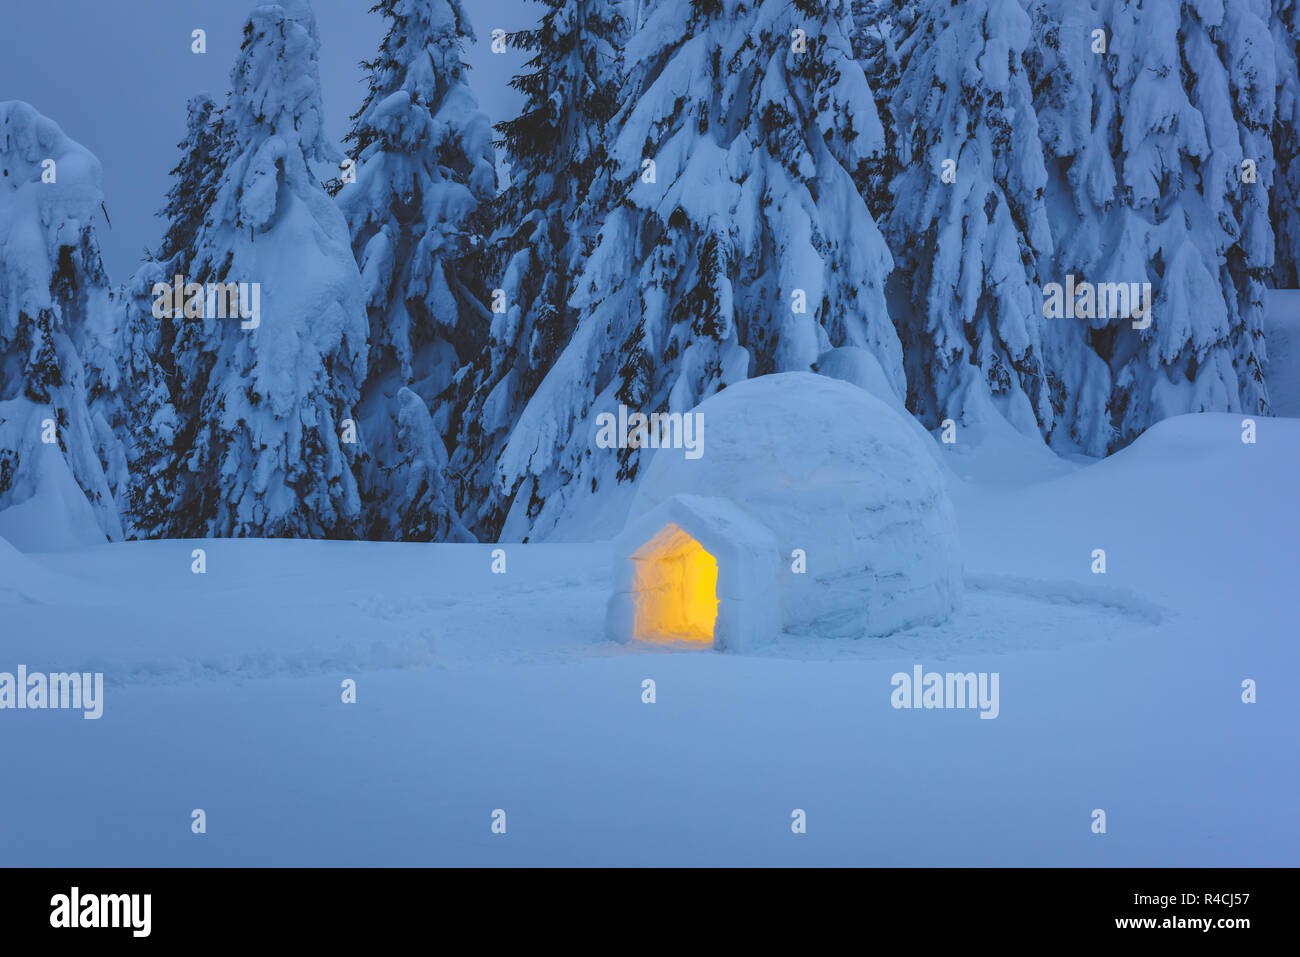 Schnee Iglu hell von innen im Winter Karpaten. Verschneite Tannen im Abendlicht im Hintergrund. Stockfoto